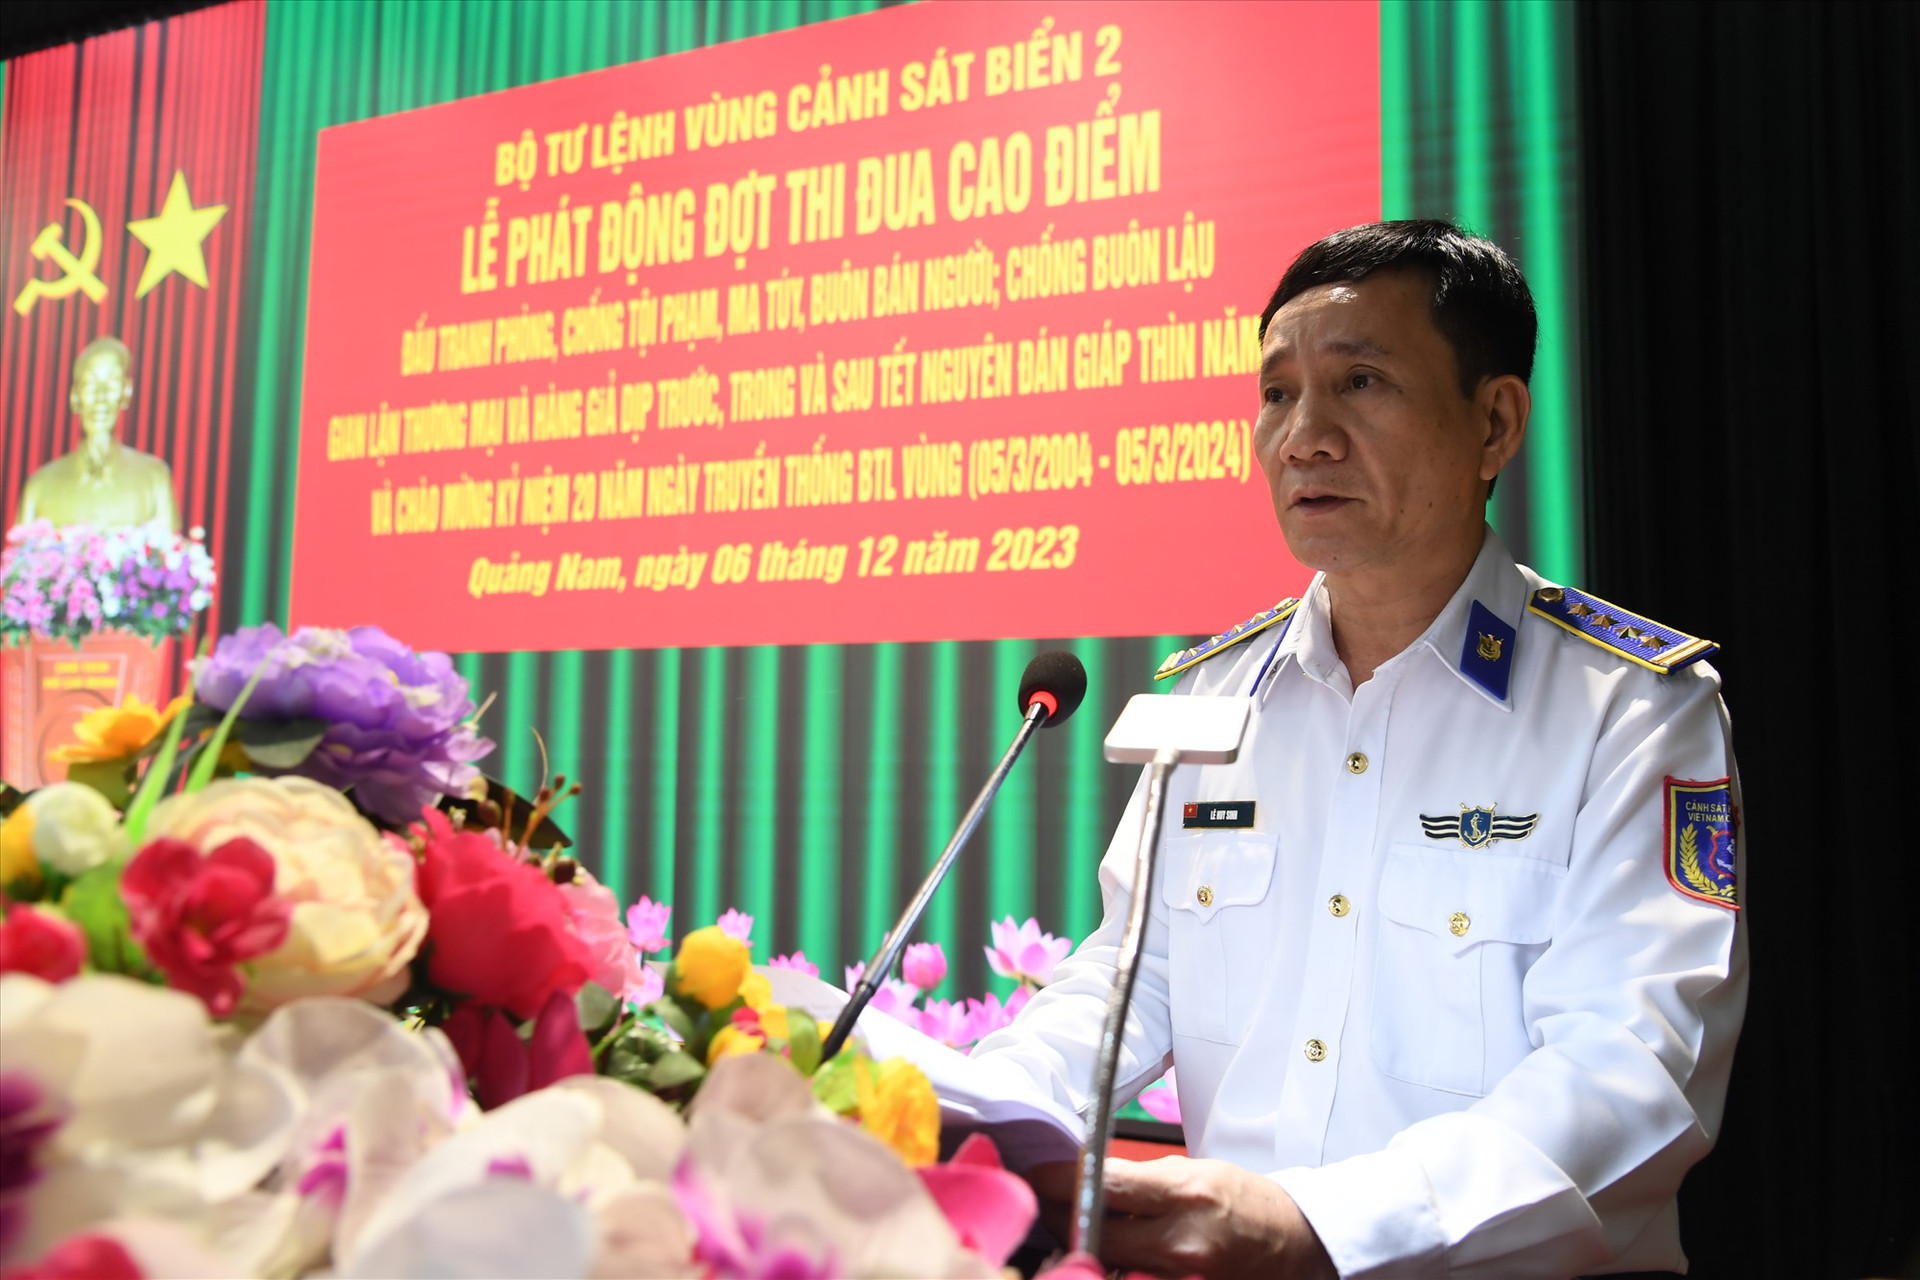 Đại tá Lê Huy Sinh - Chính uỷ Vùng phát động đợt thi đua cao điểm